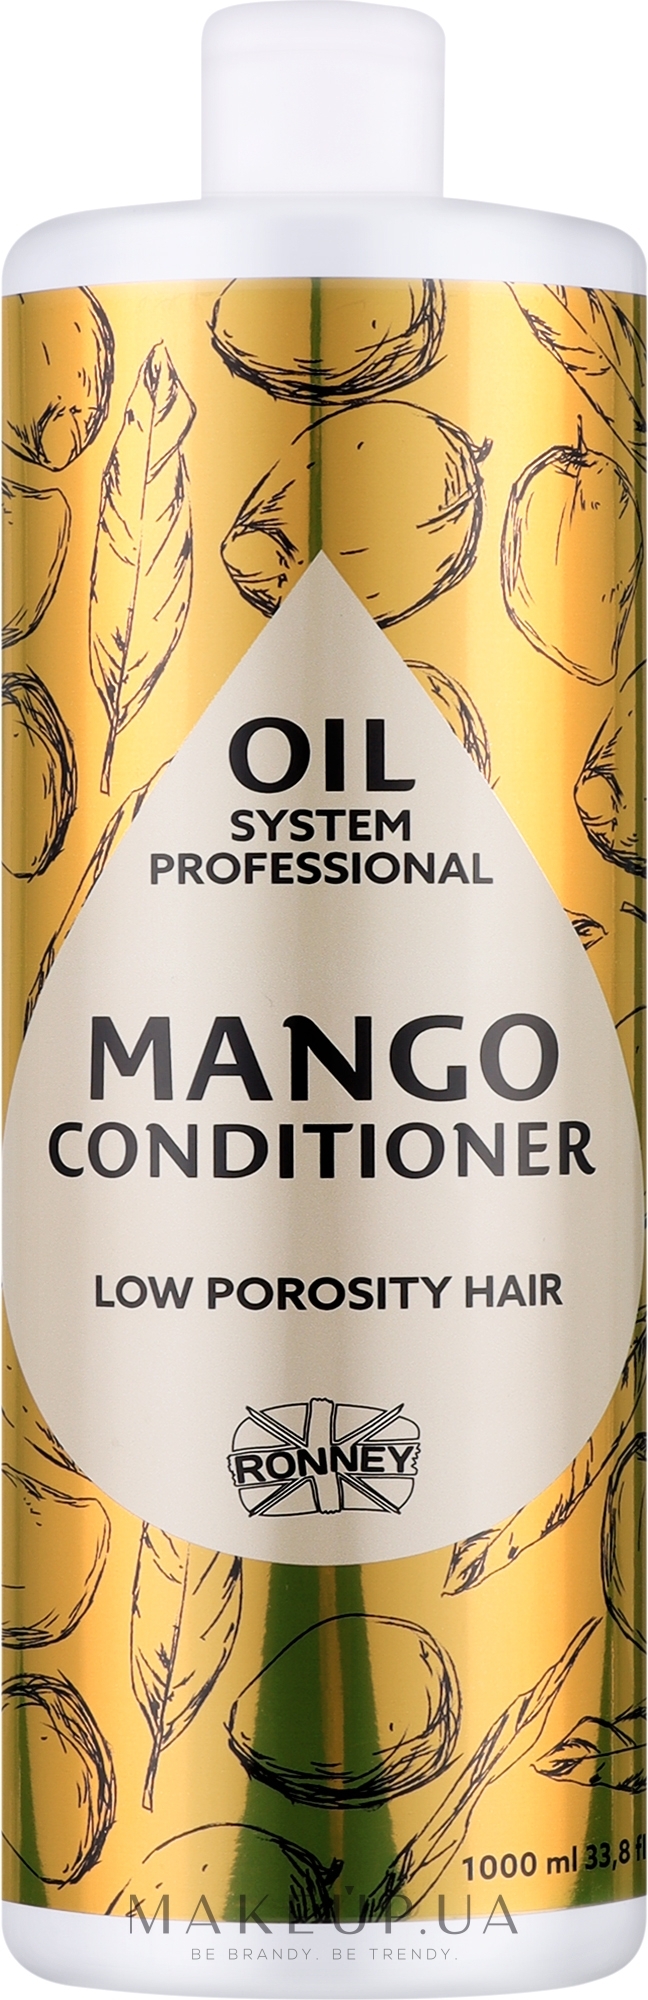 Кондиционер для низкопористых волос с маслом манго - Ronney Professional Oil System Low Porosity Hair Mango Conditioner — фото 1000ml